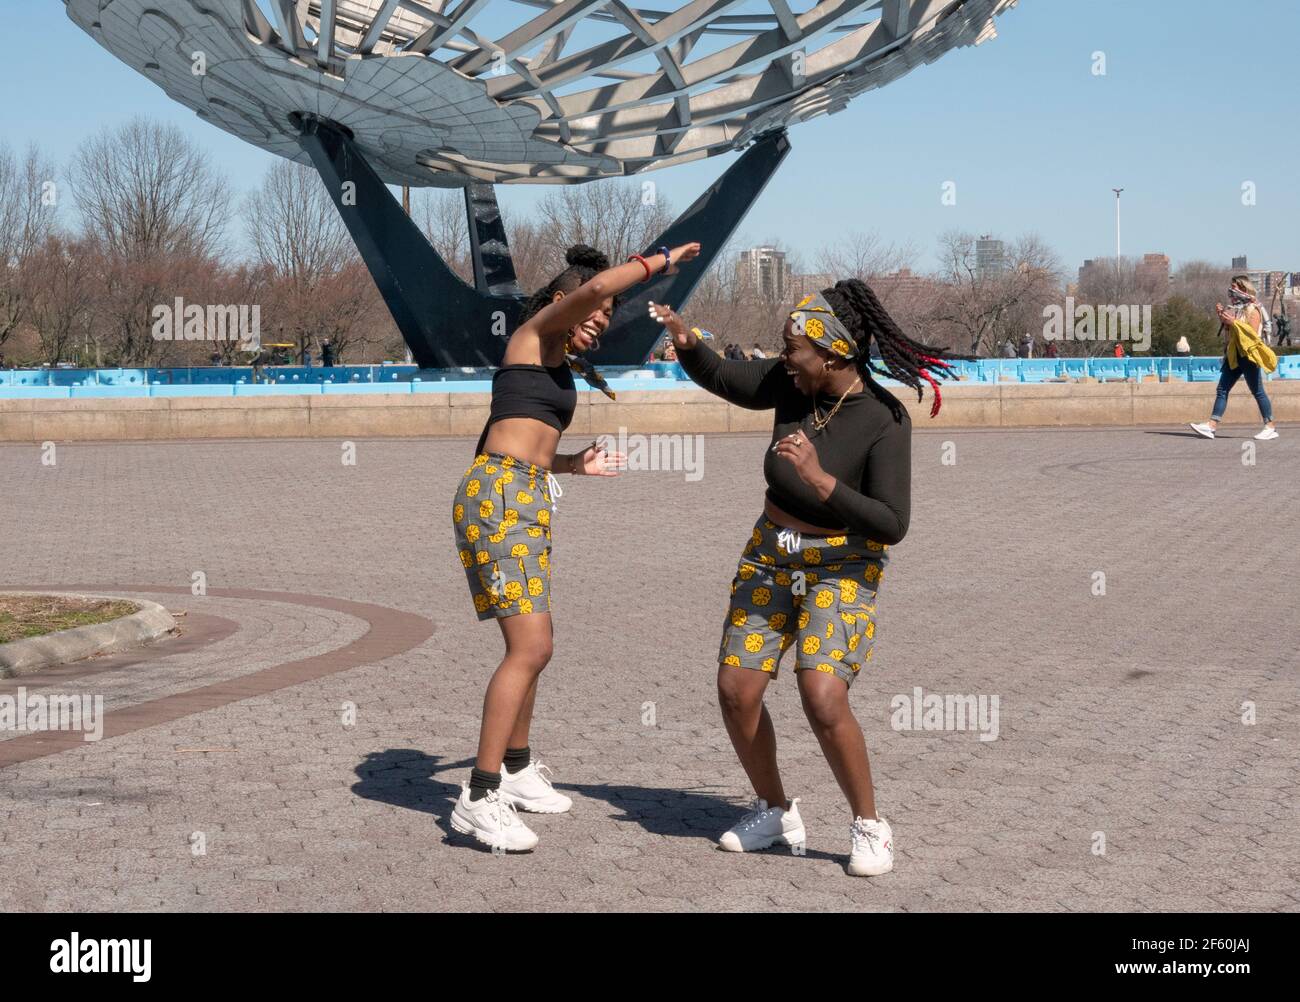 Les sœurs du Ghana enregistrent des programmes de danse près de Unisphere, dans le parc Corona de Flushing Meadows, à Queens, dans la ville de New York. Banque D'Images